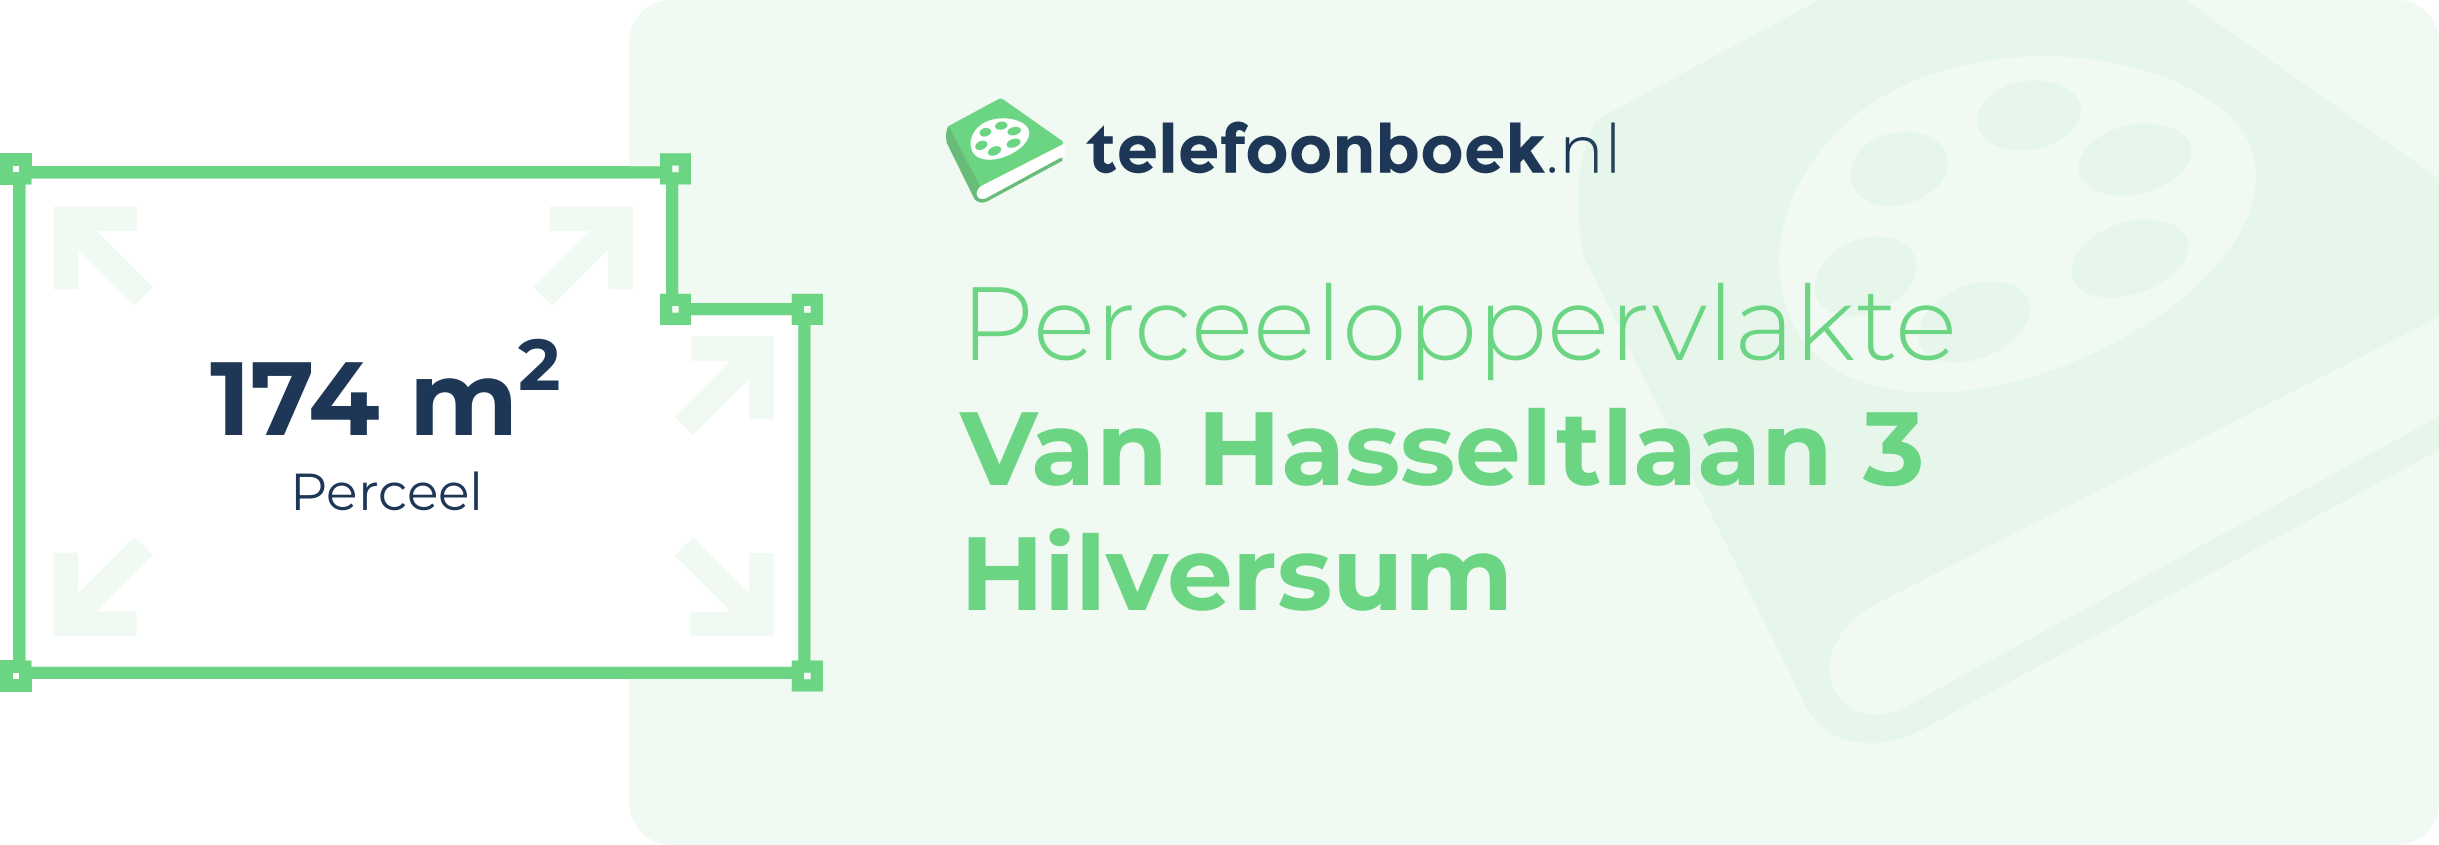 Perceeloppervlakte Van Hasseltlaan 3 Hilversum